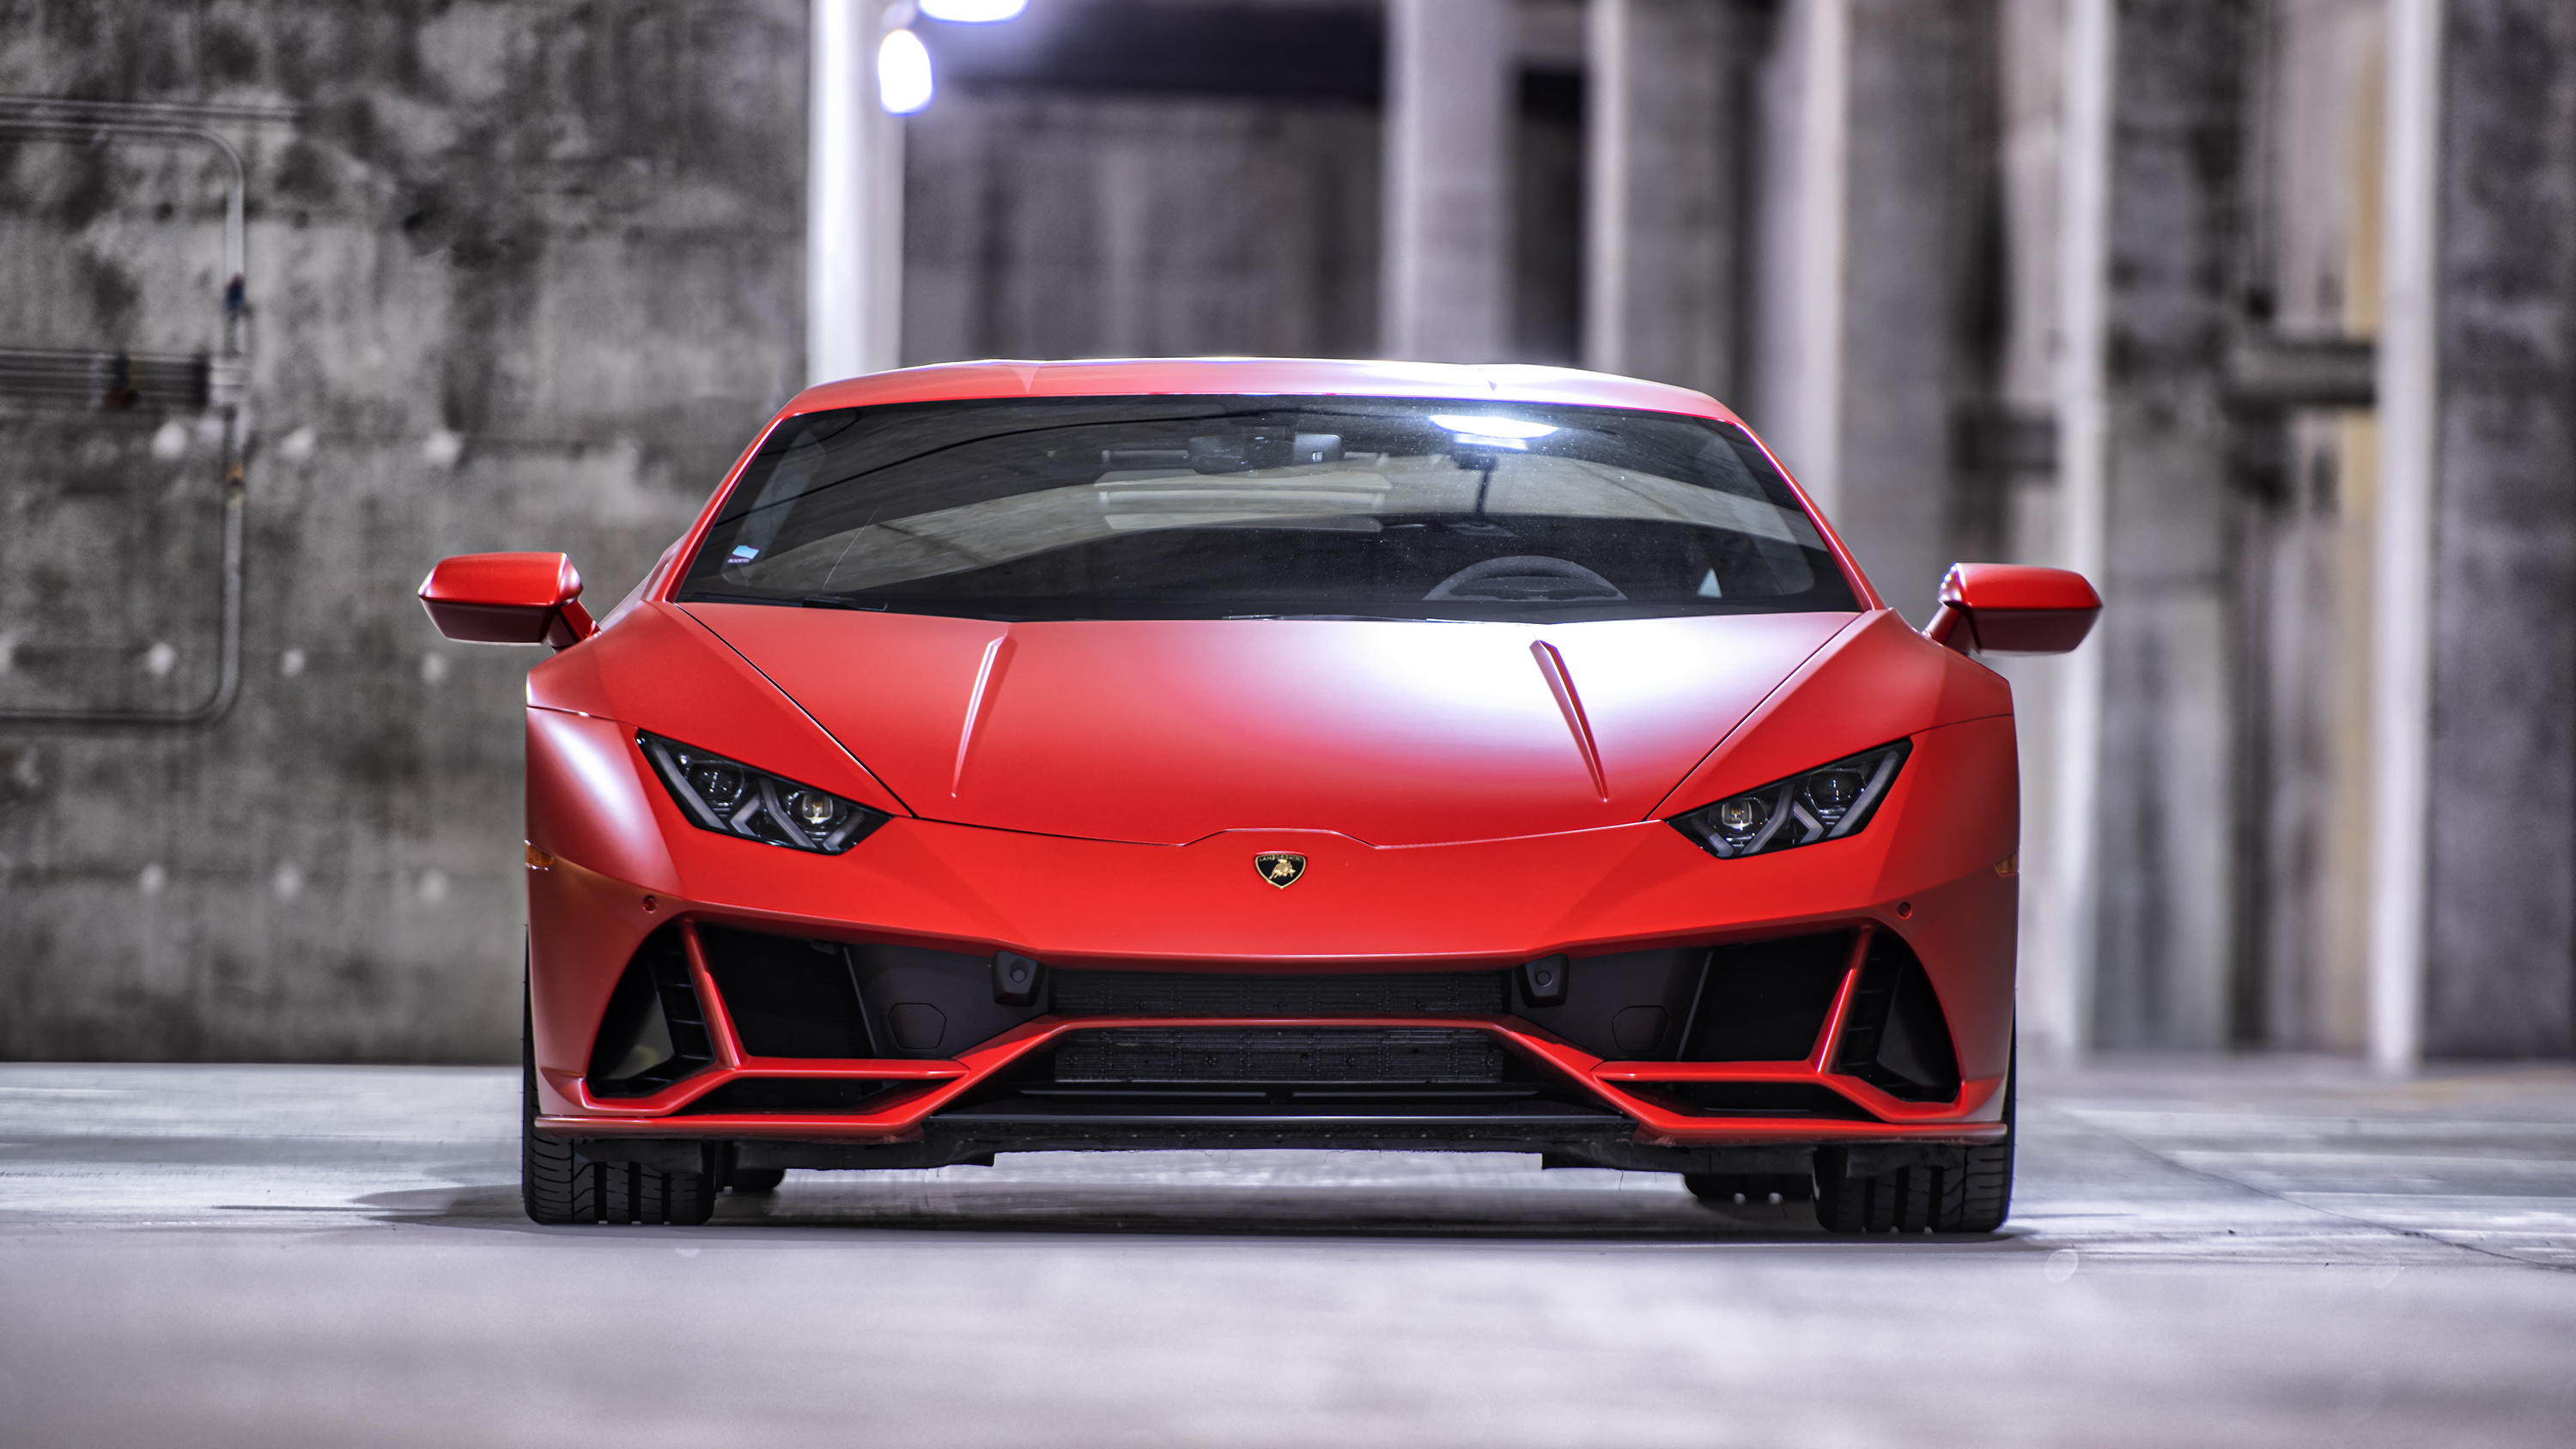 Descarga gratuita de fondo de pantalla para móvil de Lamborghini, Vehículos, Lamborghini Huracán Evo.